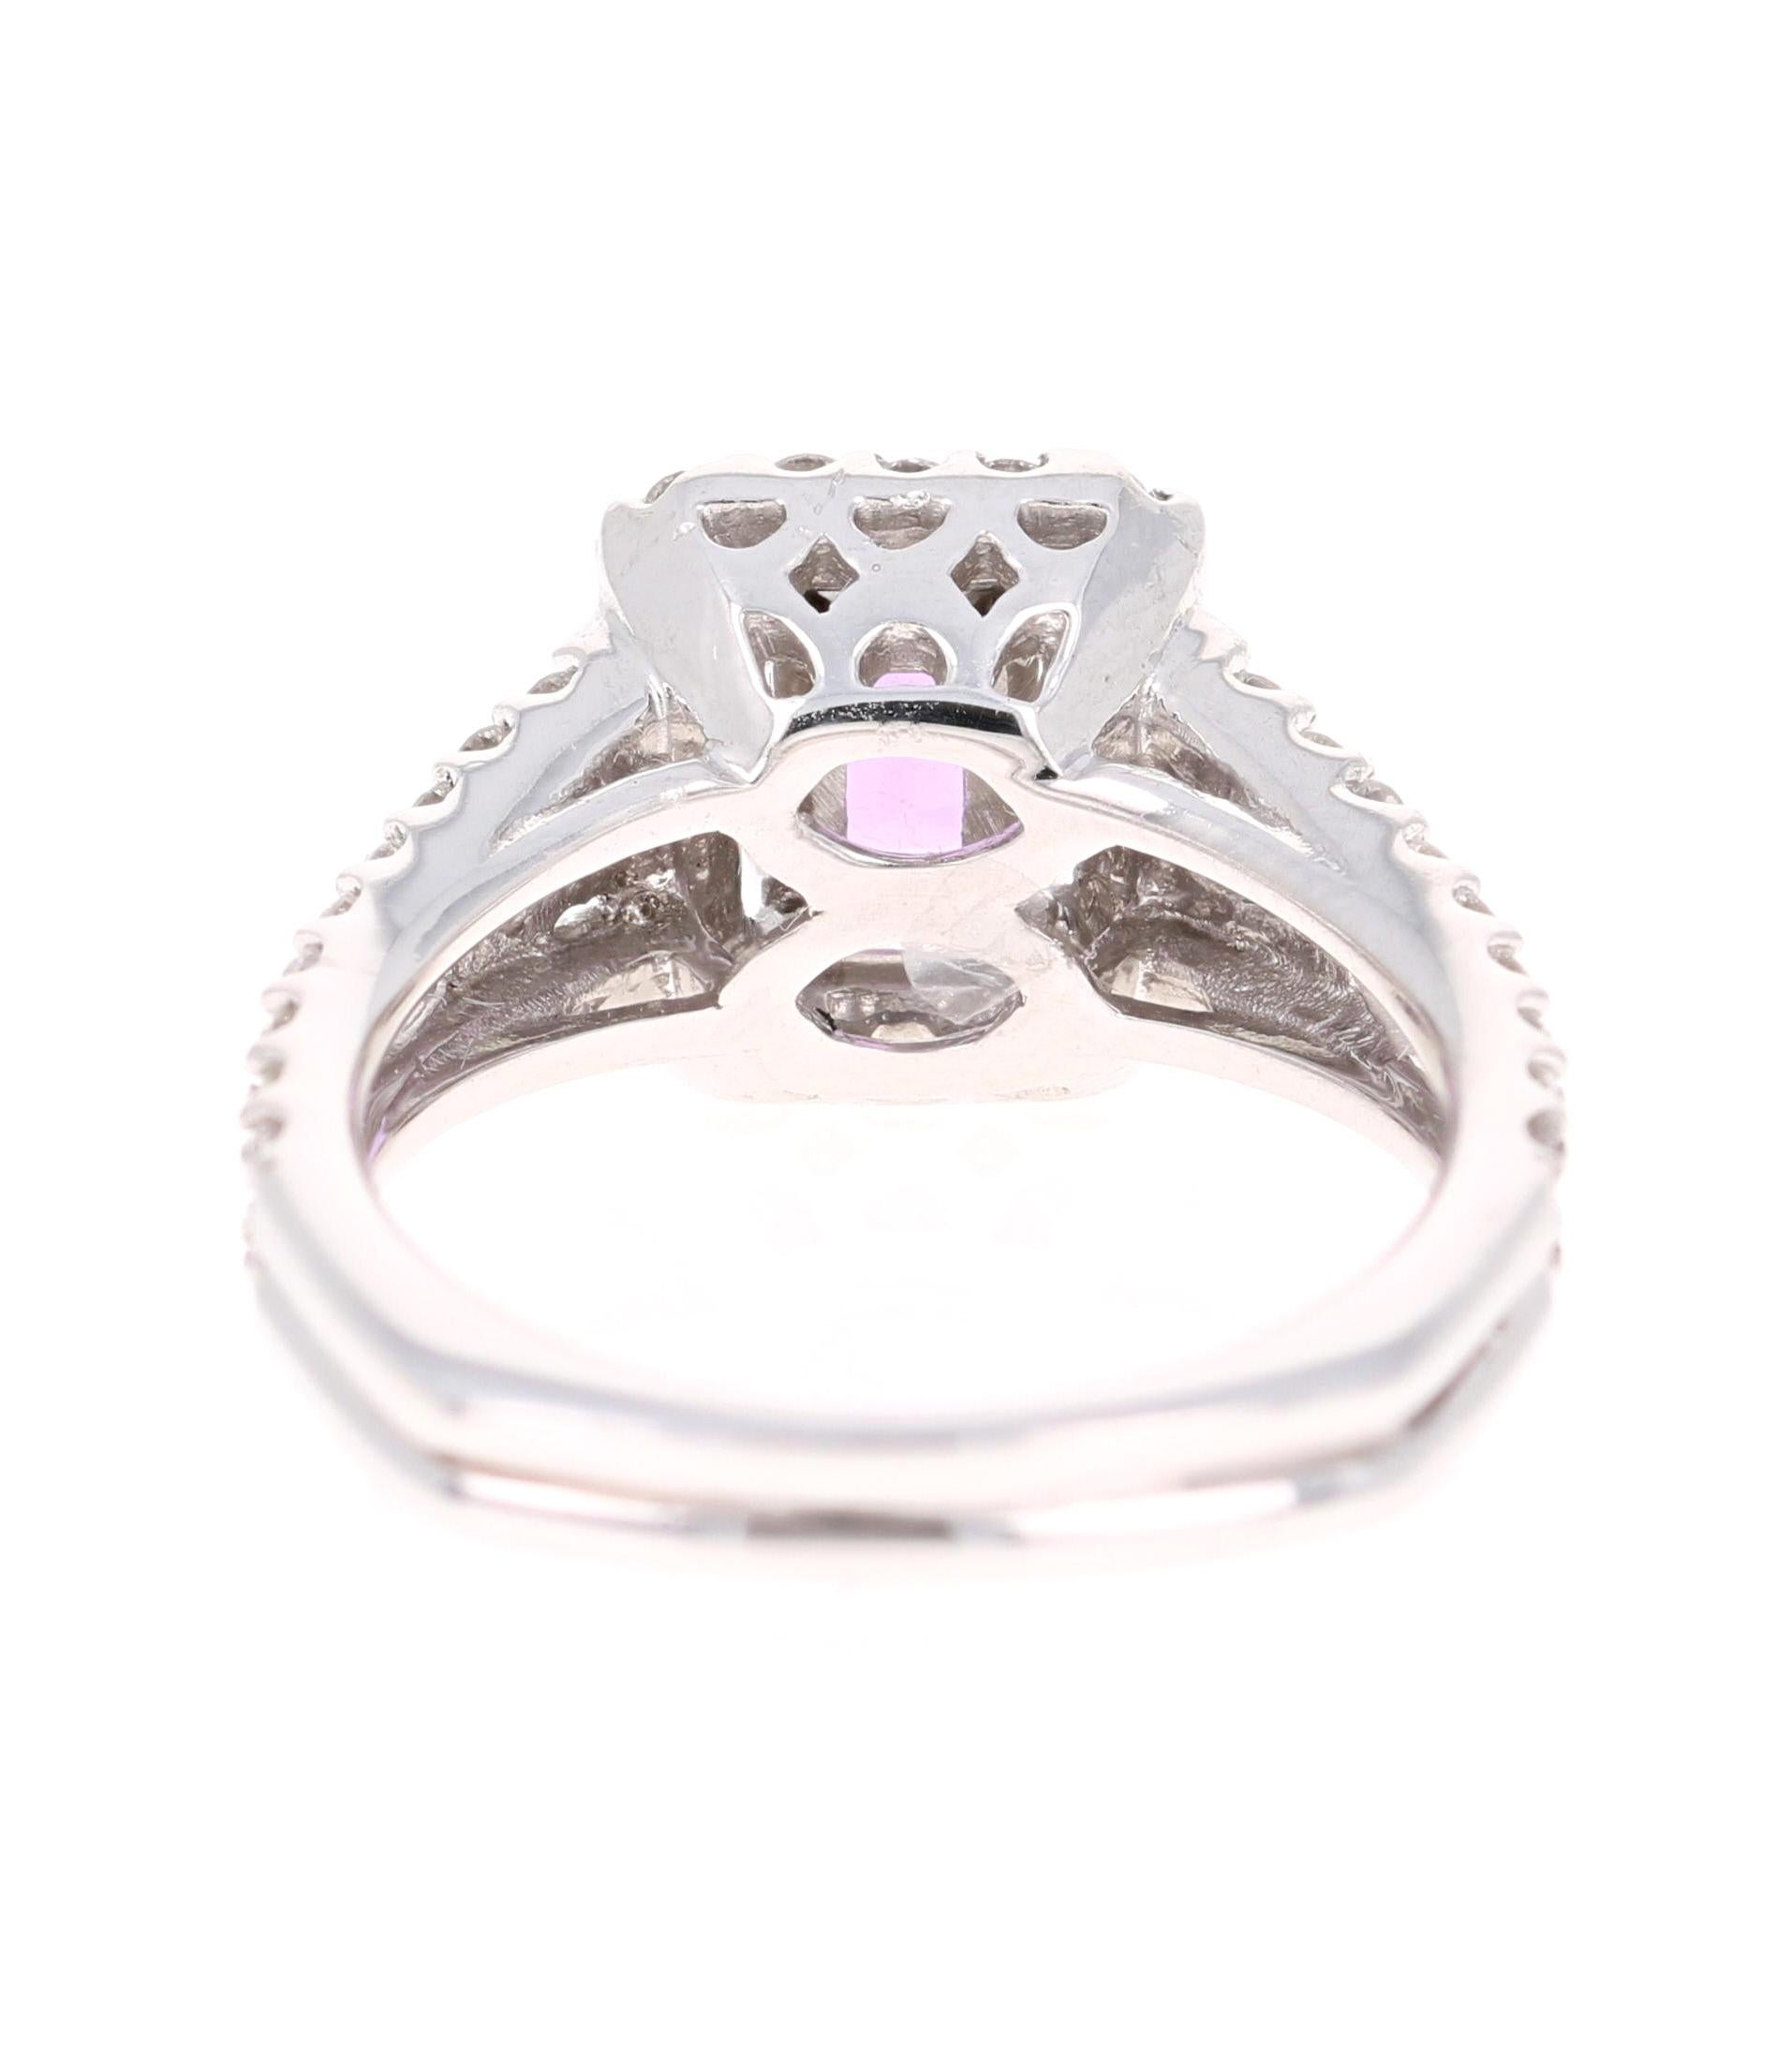 Emerald Cut 2.14 Carat Pink Sapphire Diamond 14 Karat White Gold Ring GIA Certified